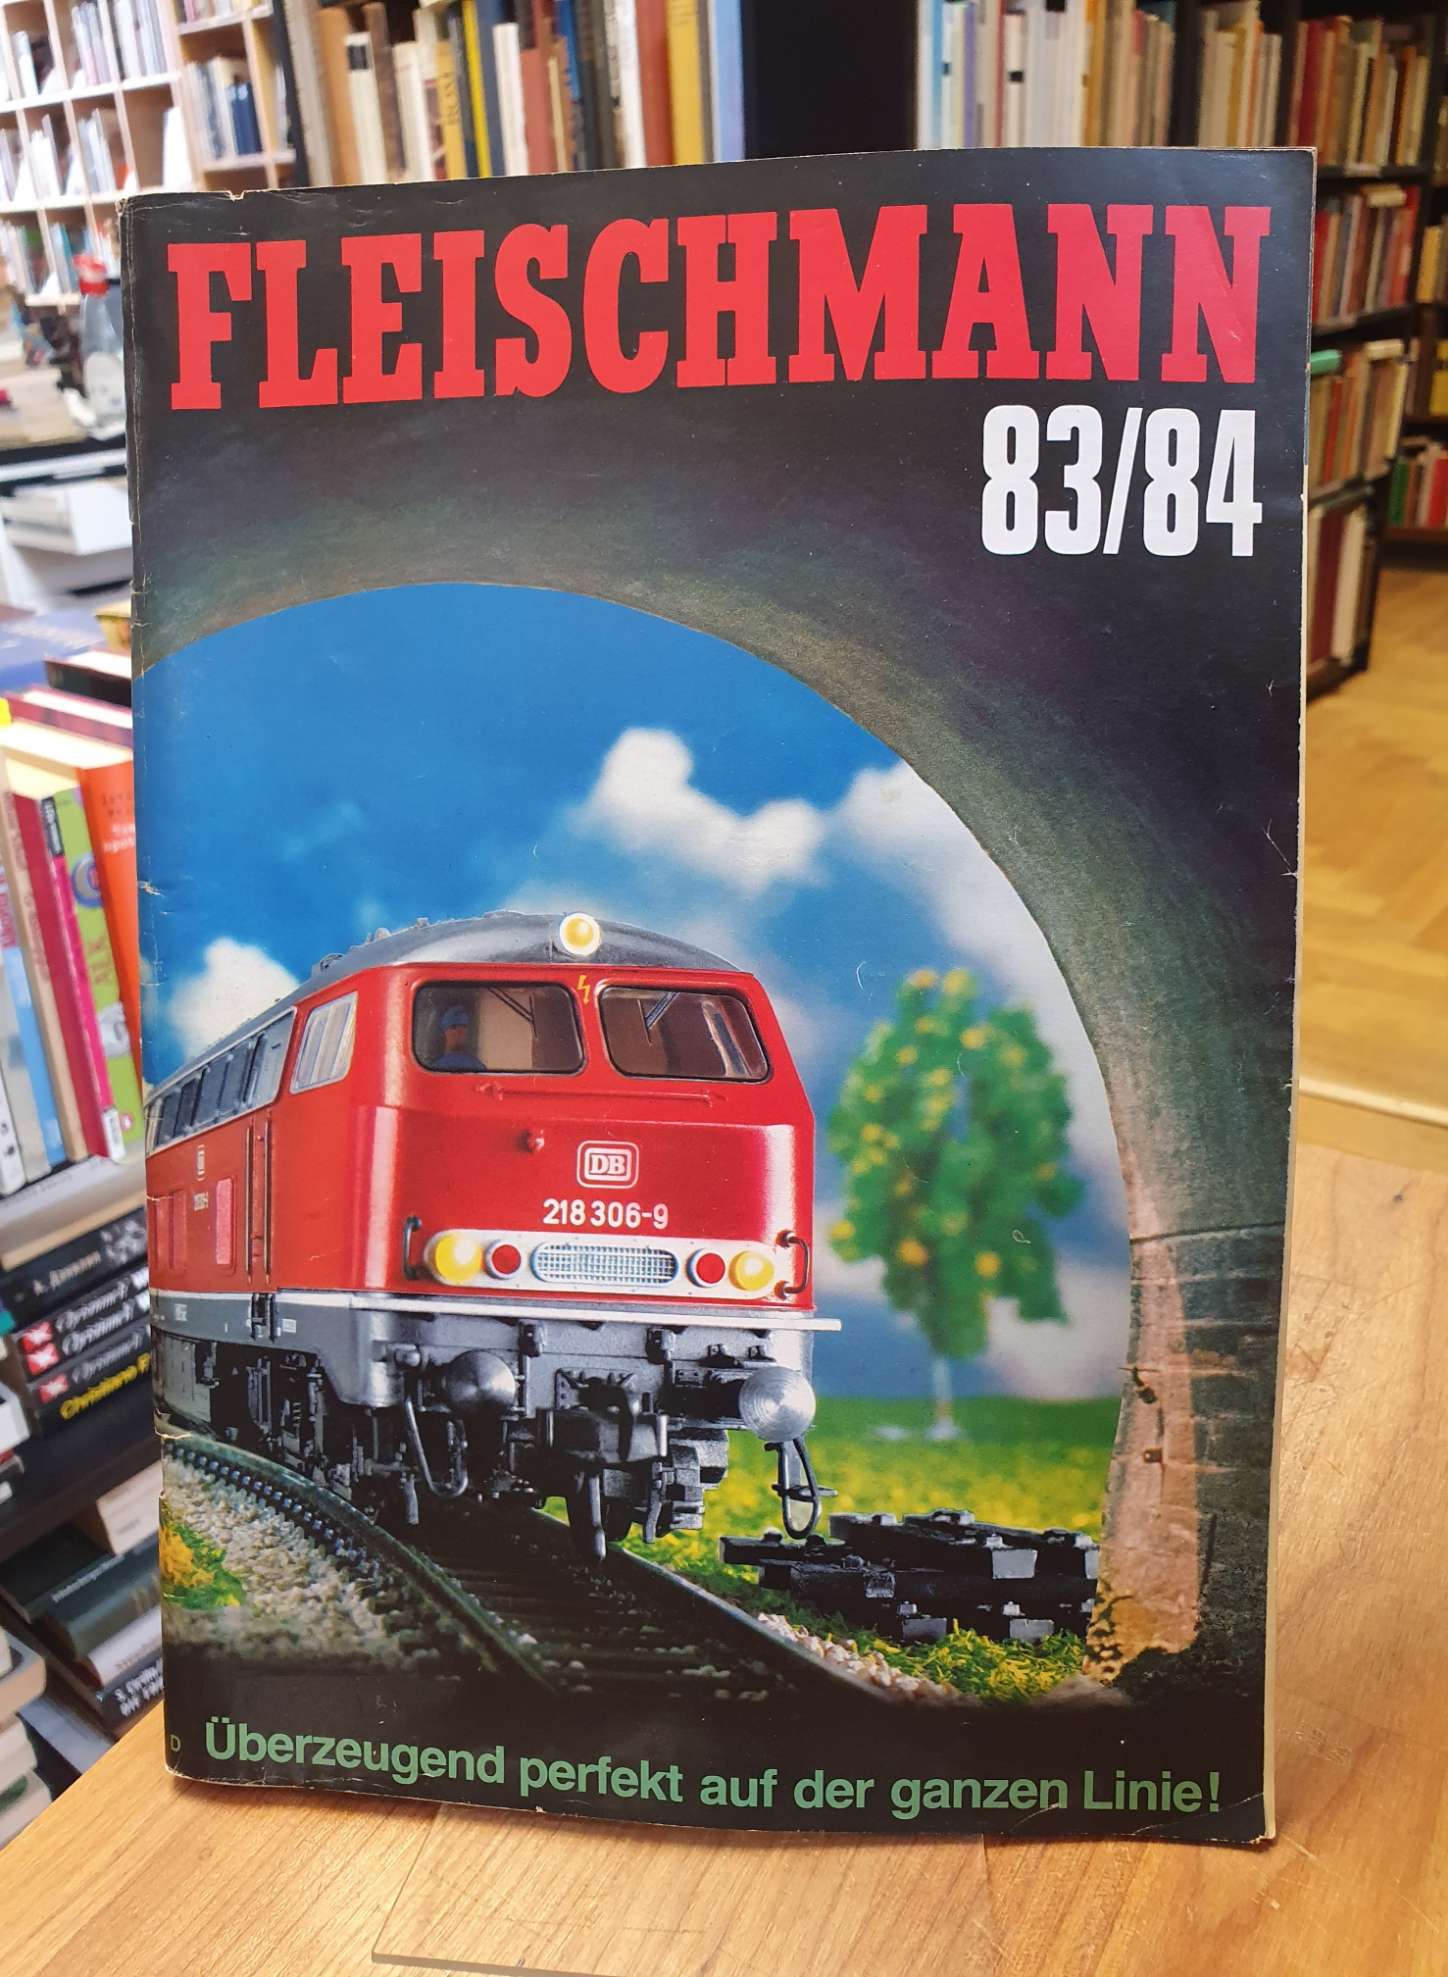 Fleischmann 83/84 – Modellbahnen Gesamt-Katalog